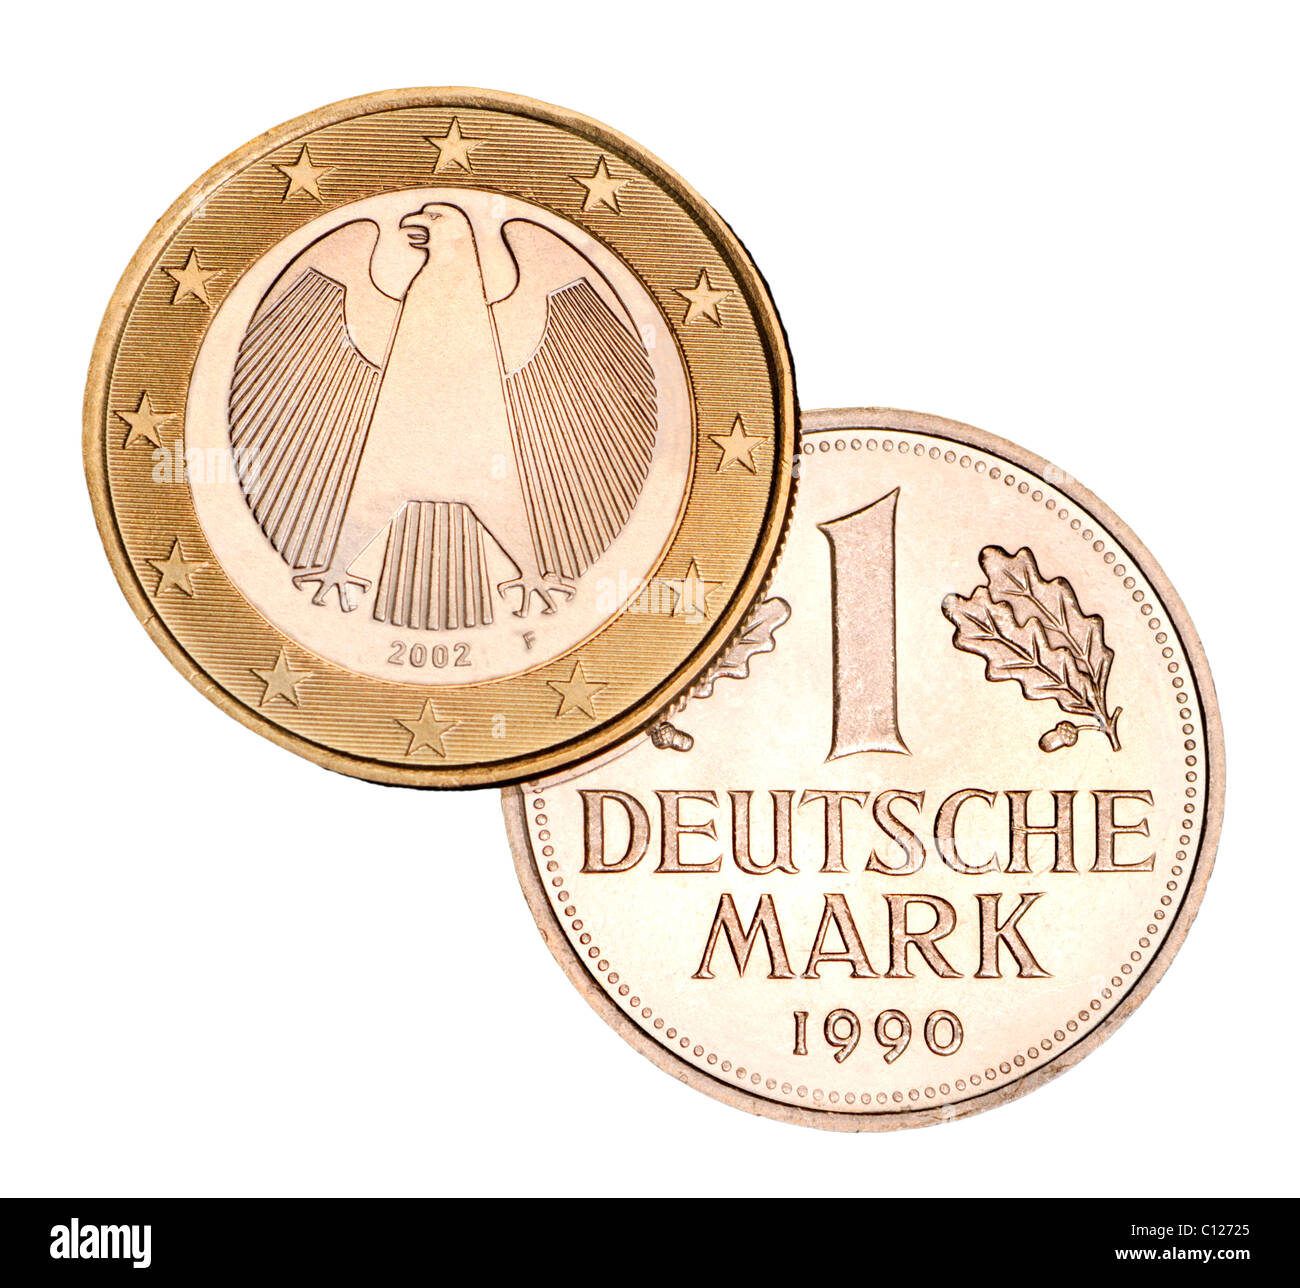 Alemán 1 monedas de euro desde 2002 y pre-euro moneda de 1 marco alemán desde 1990 Foto de stock